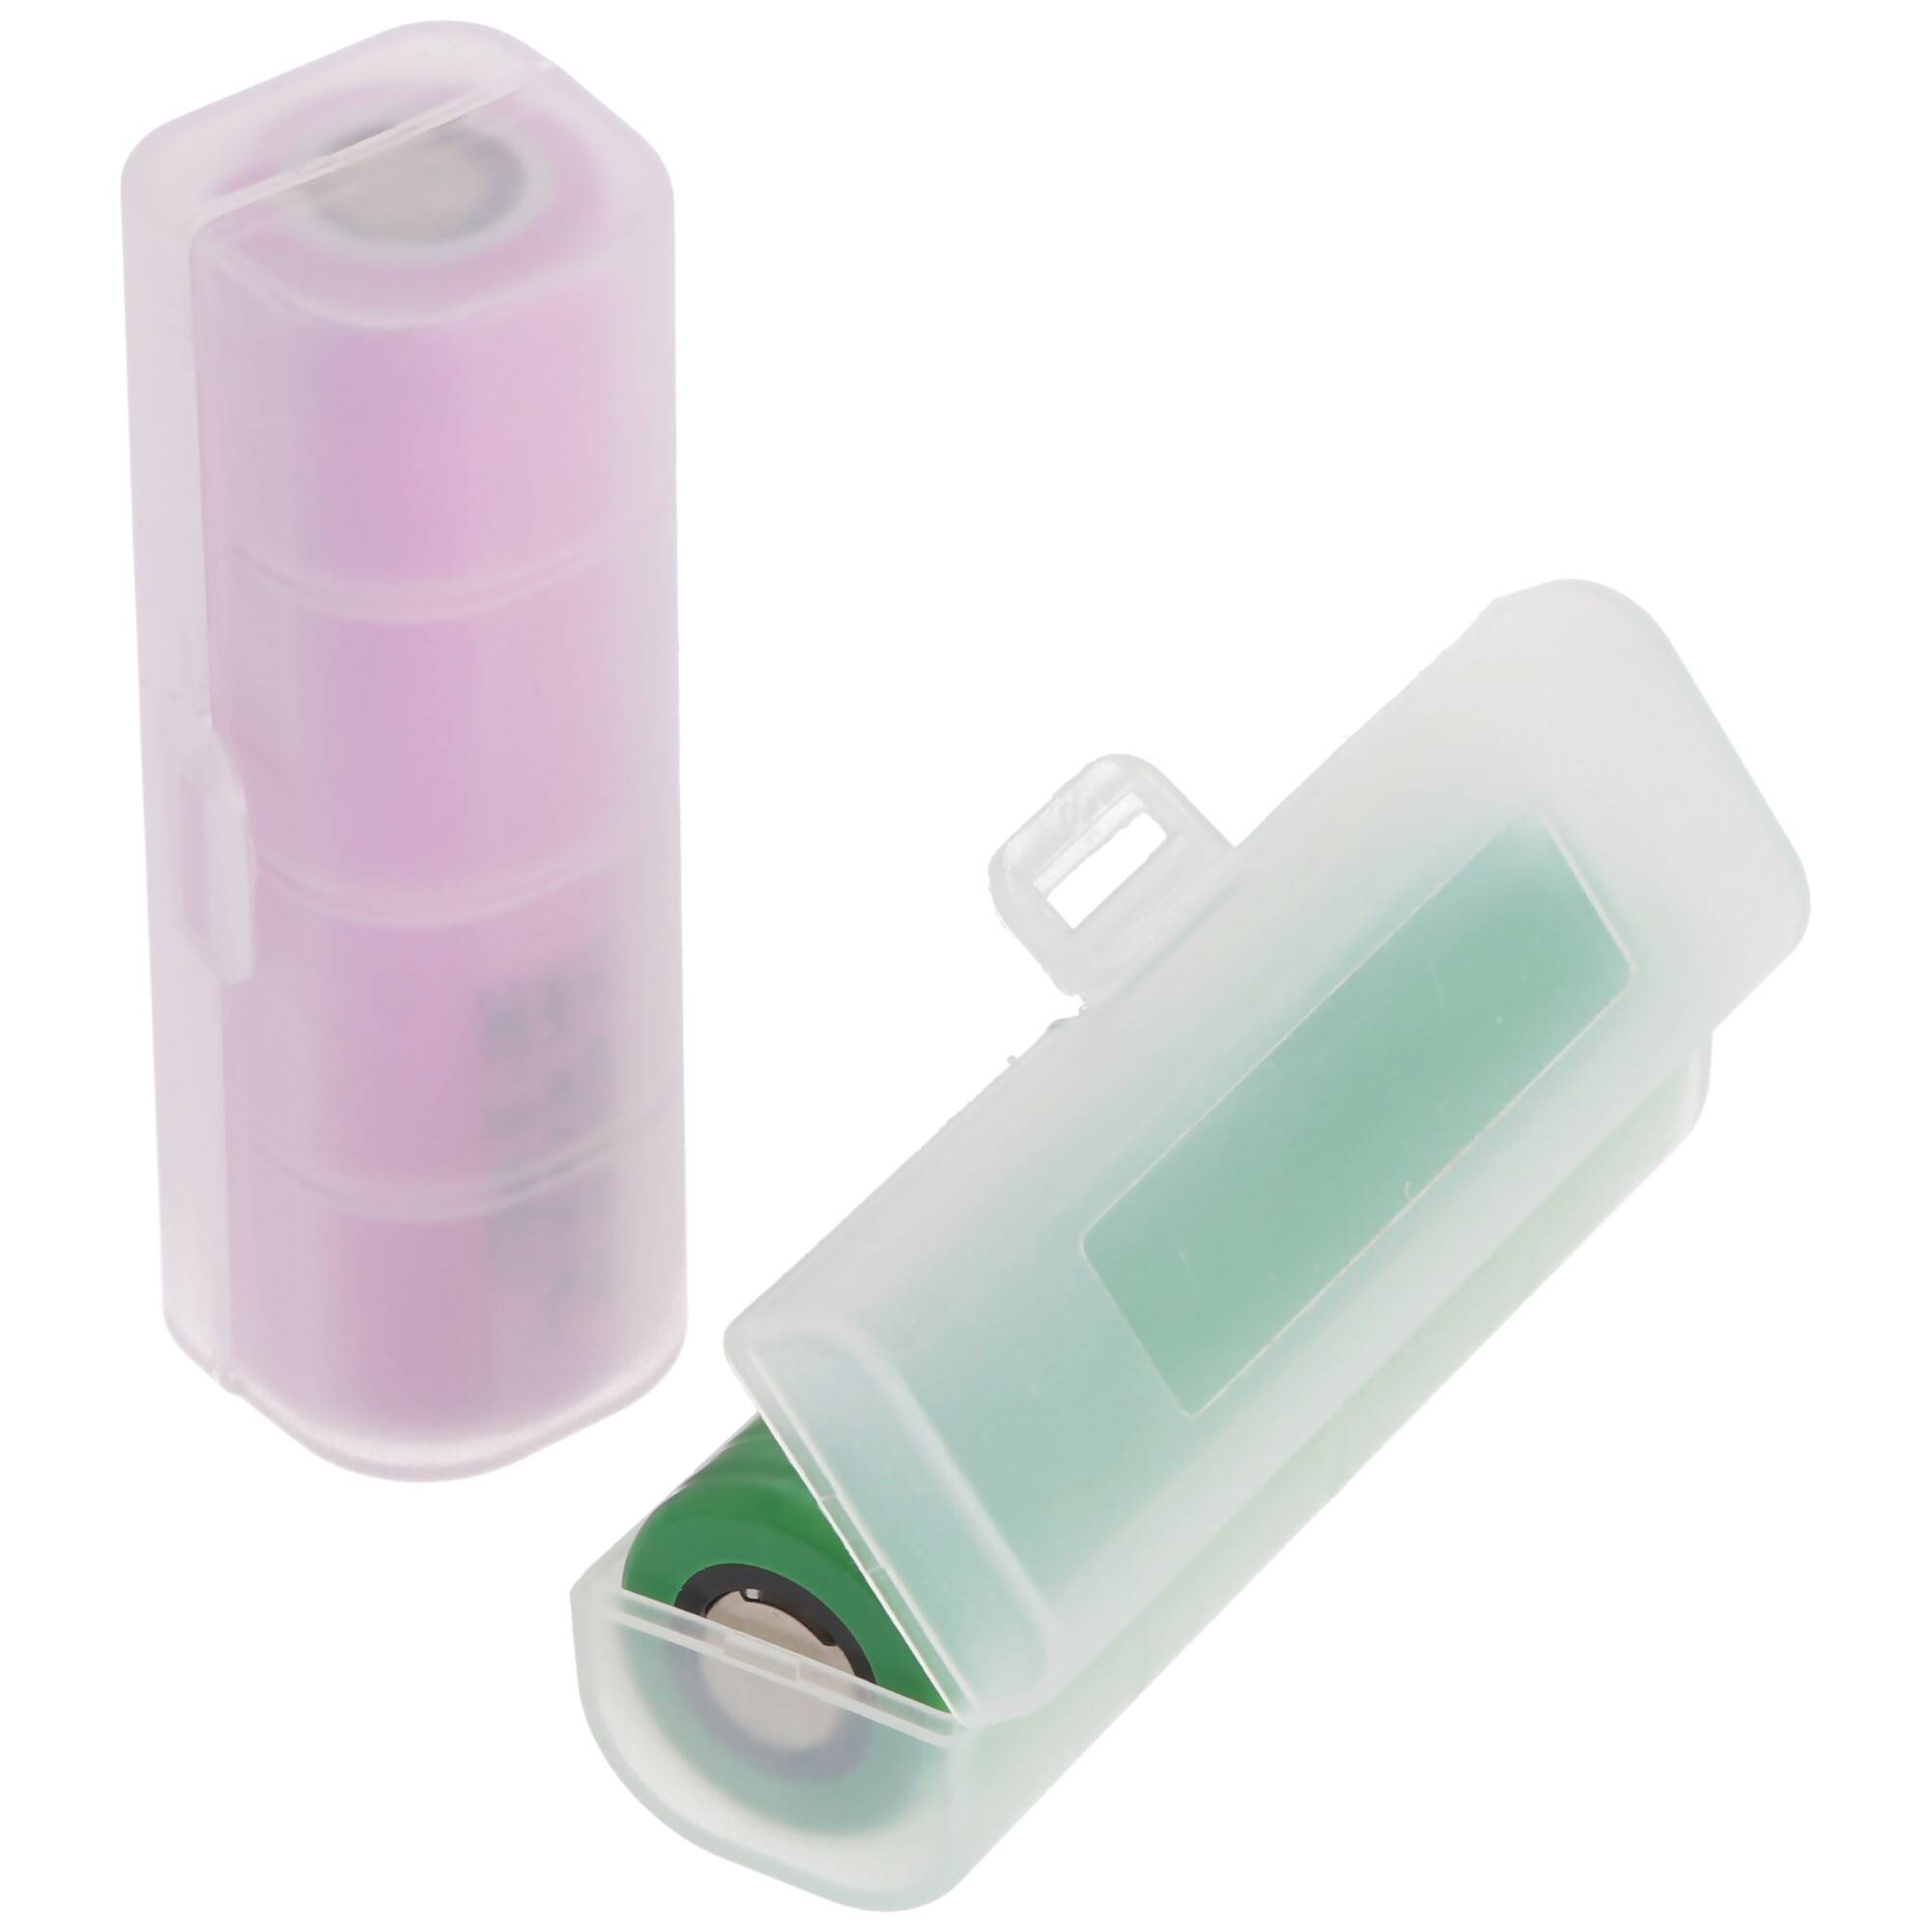 Universal AccuSafe Aufbewahrungsbox für 1 Stück 18650, 16650 Li-ion Akku, Farbe transparent, Innenmaße max. 64x18x18mm